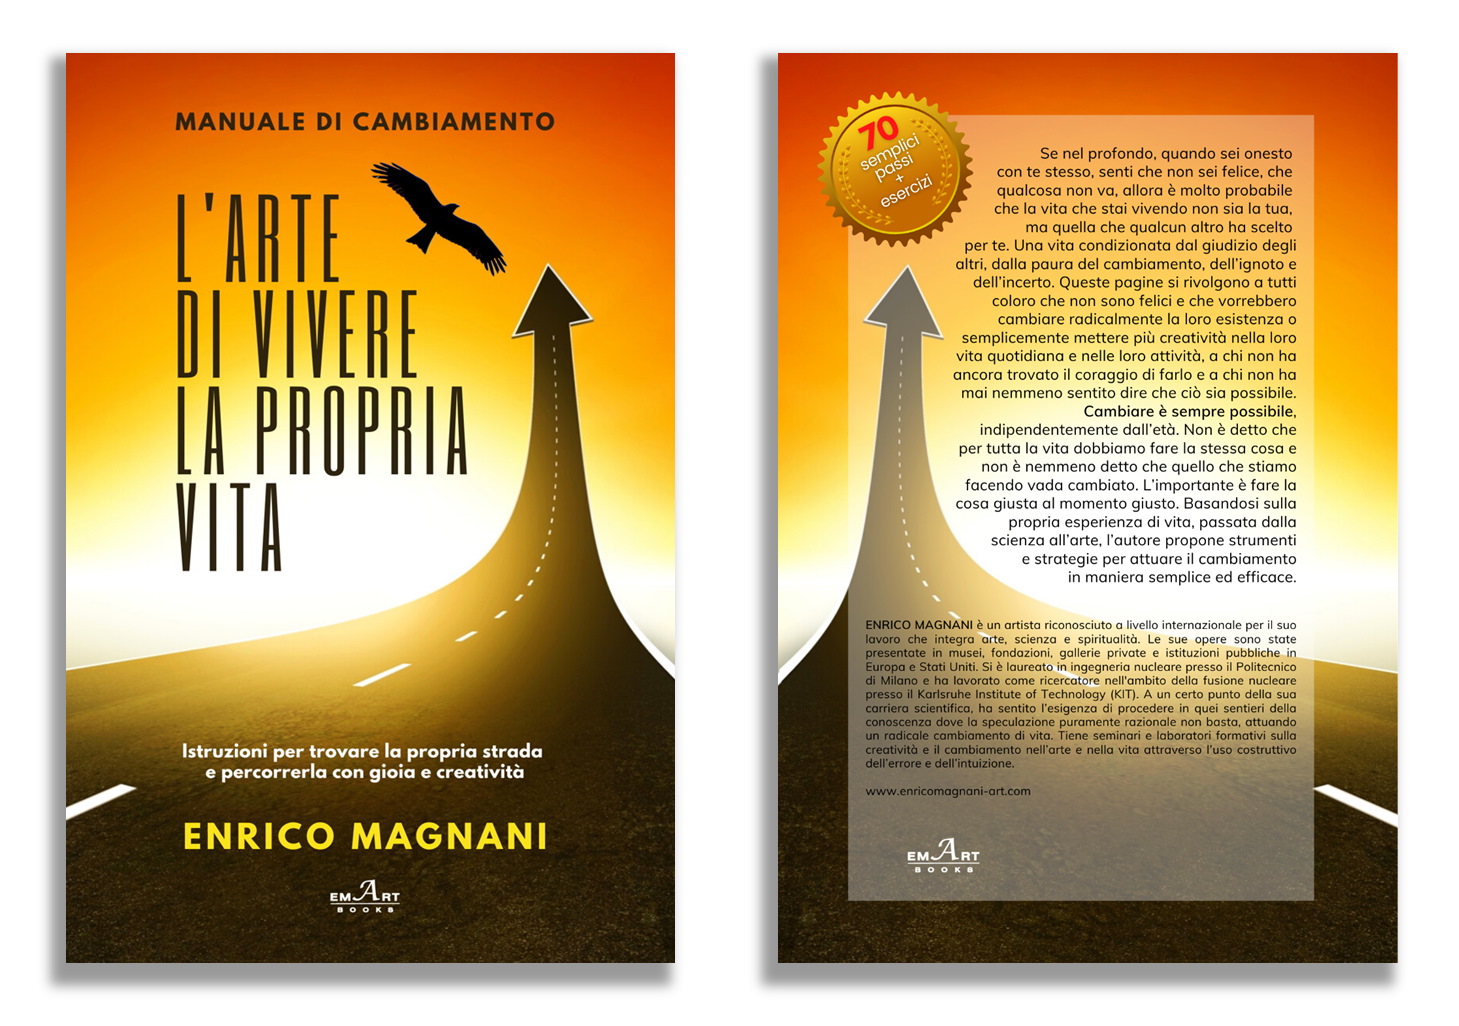 Enrico Magnani, arte, contemporary, abstract, news, media, manuale, cambiamento, libro